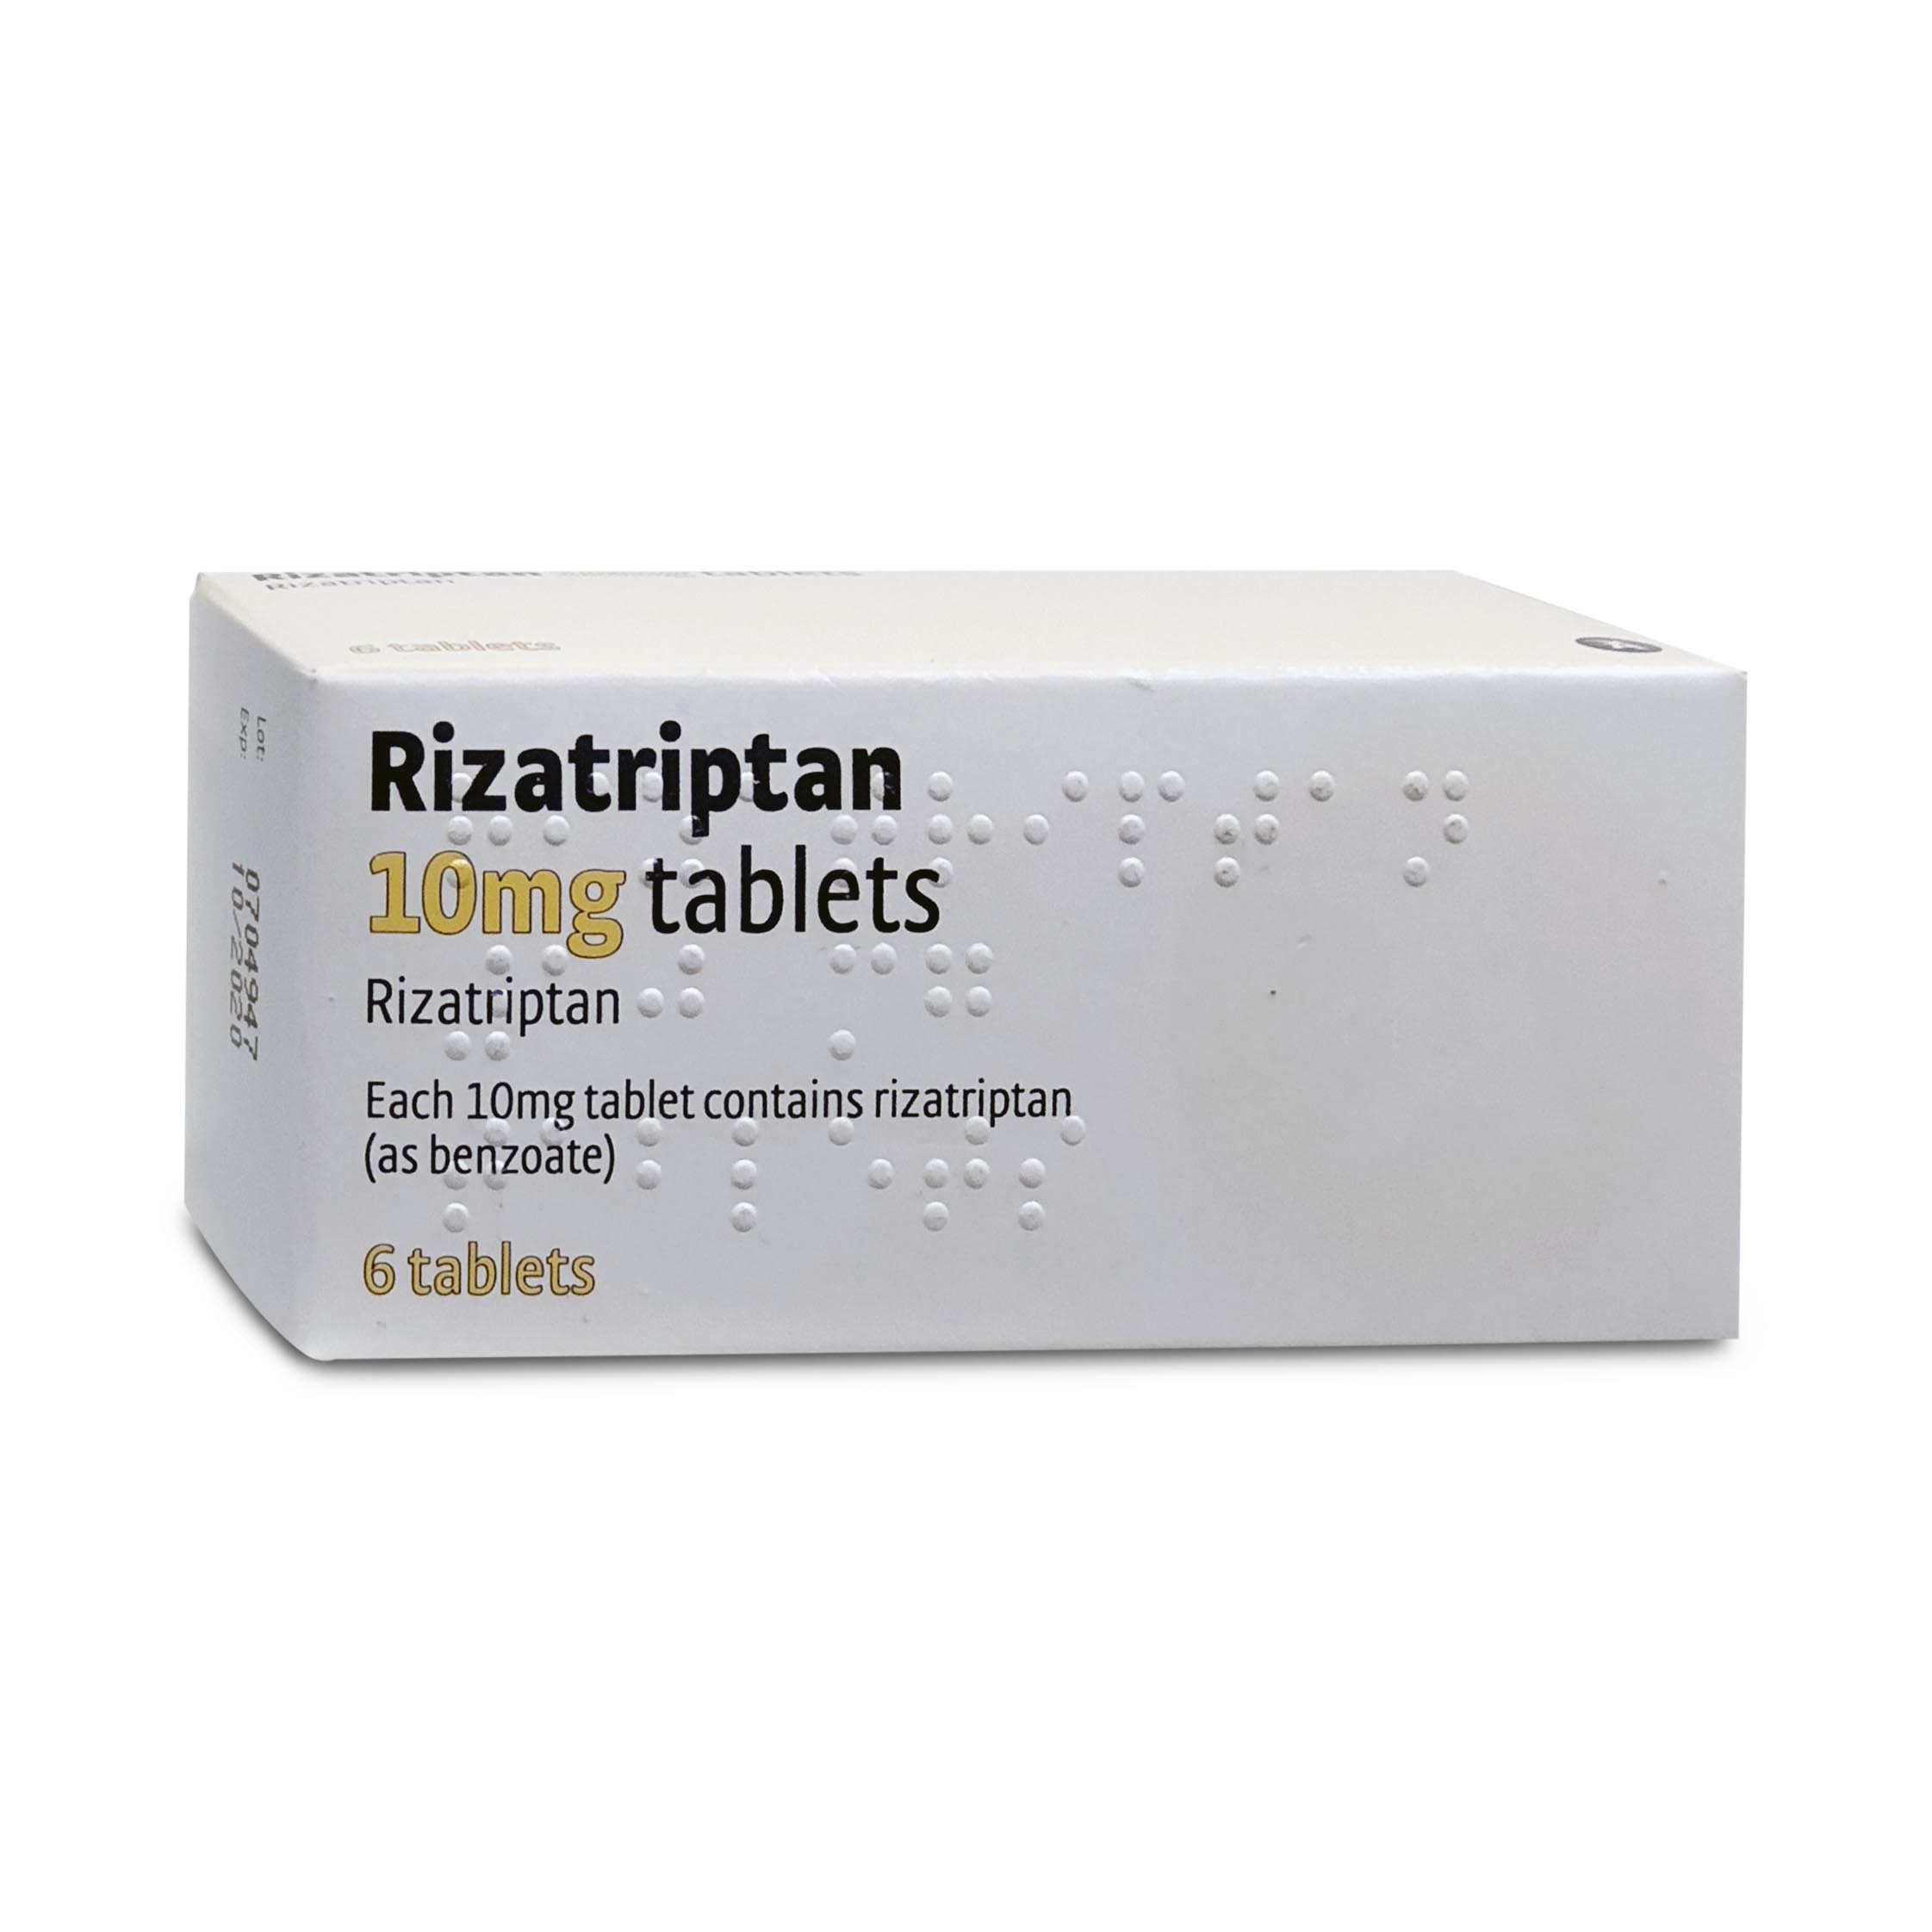 Rizatriptan 10mg 6 tablets